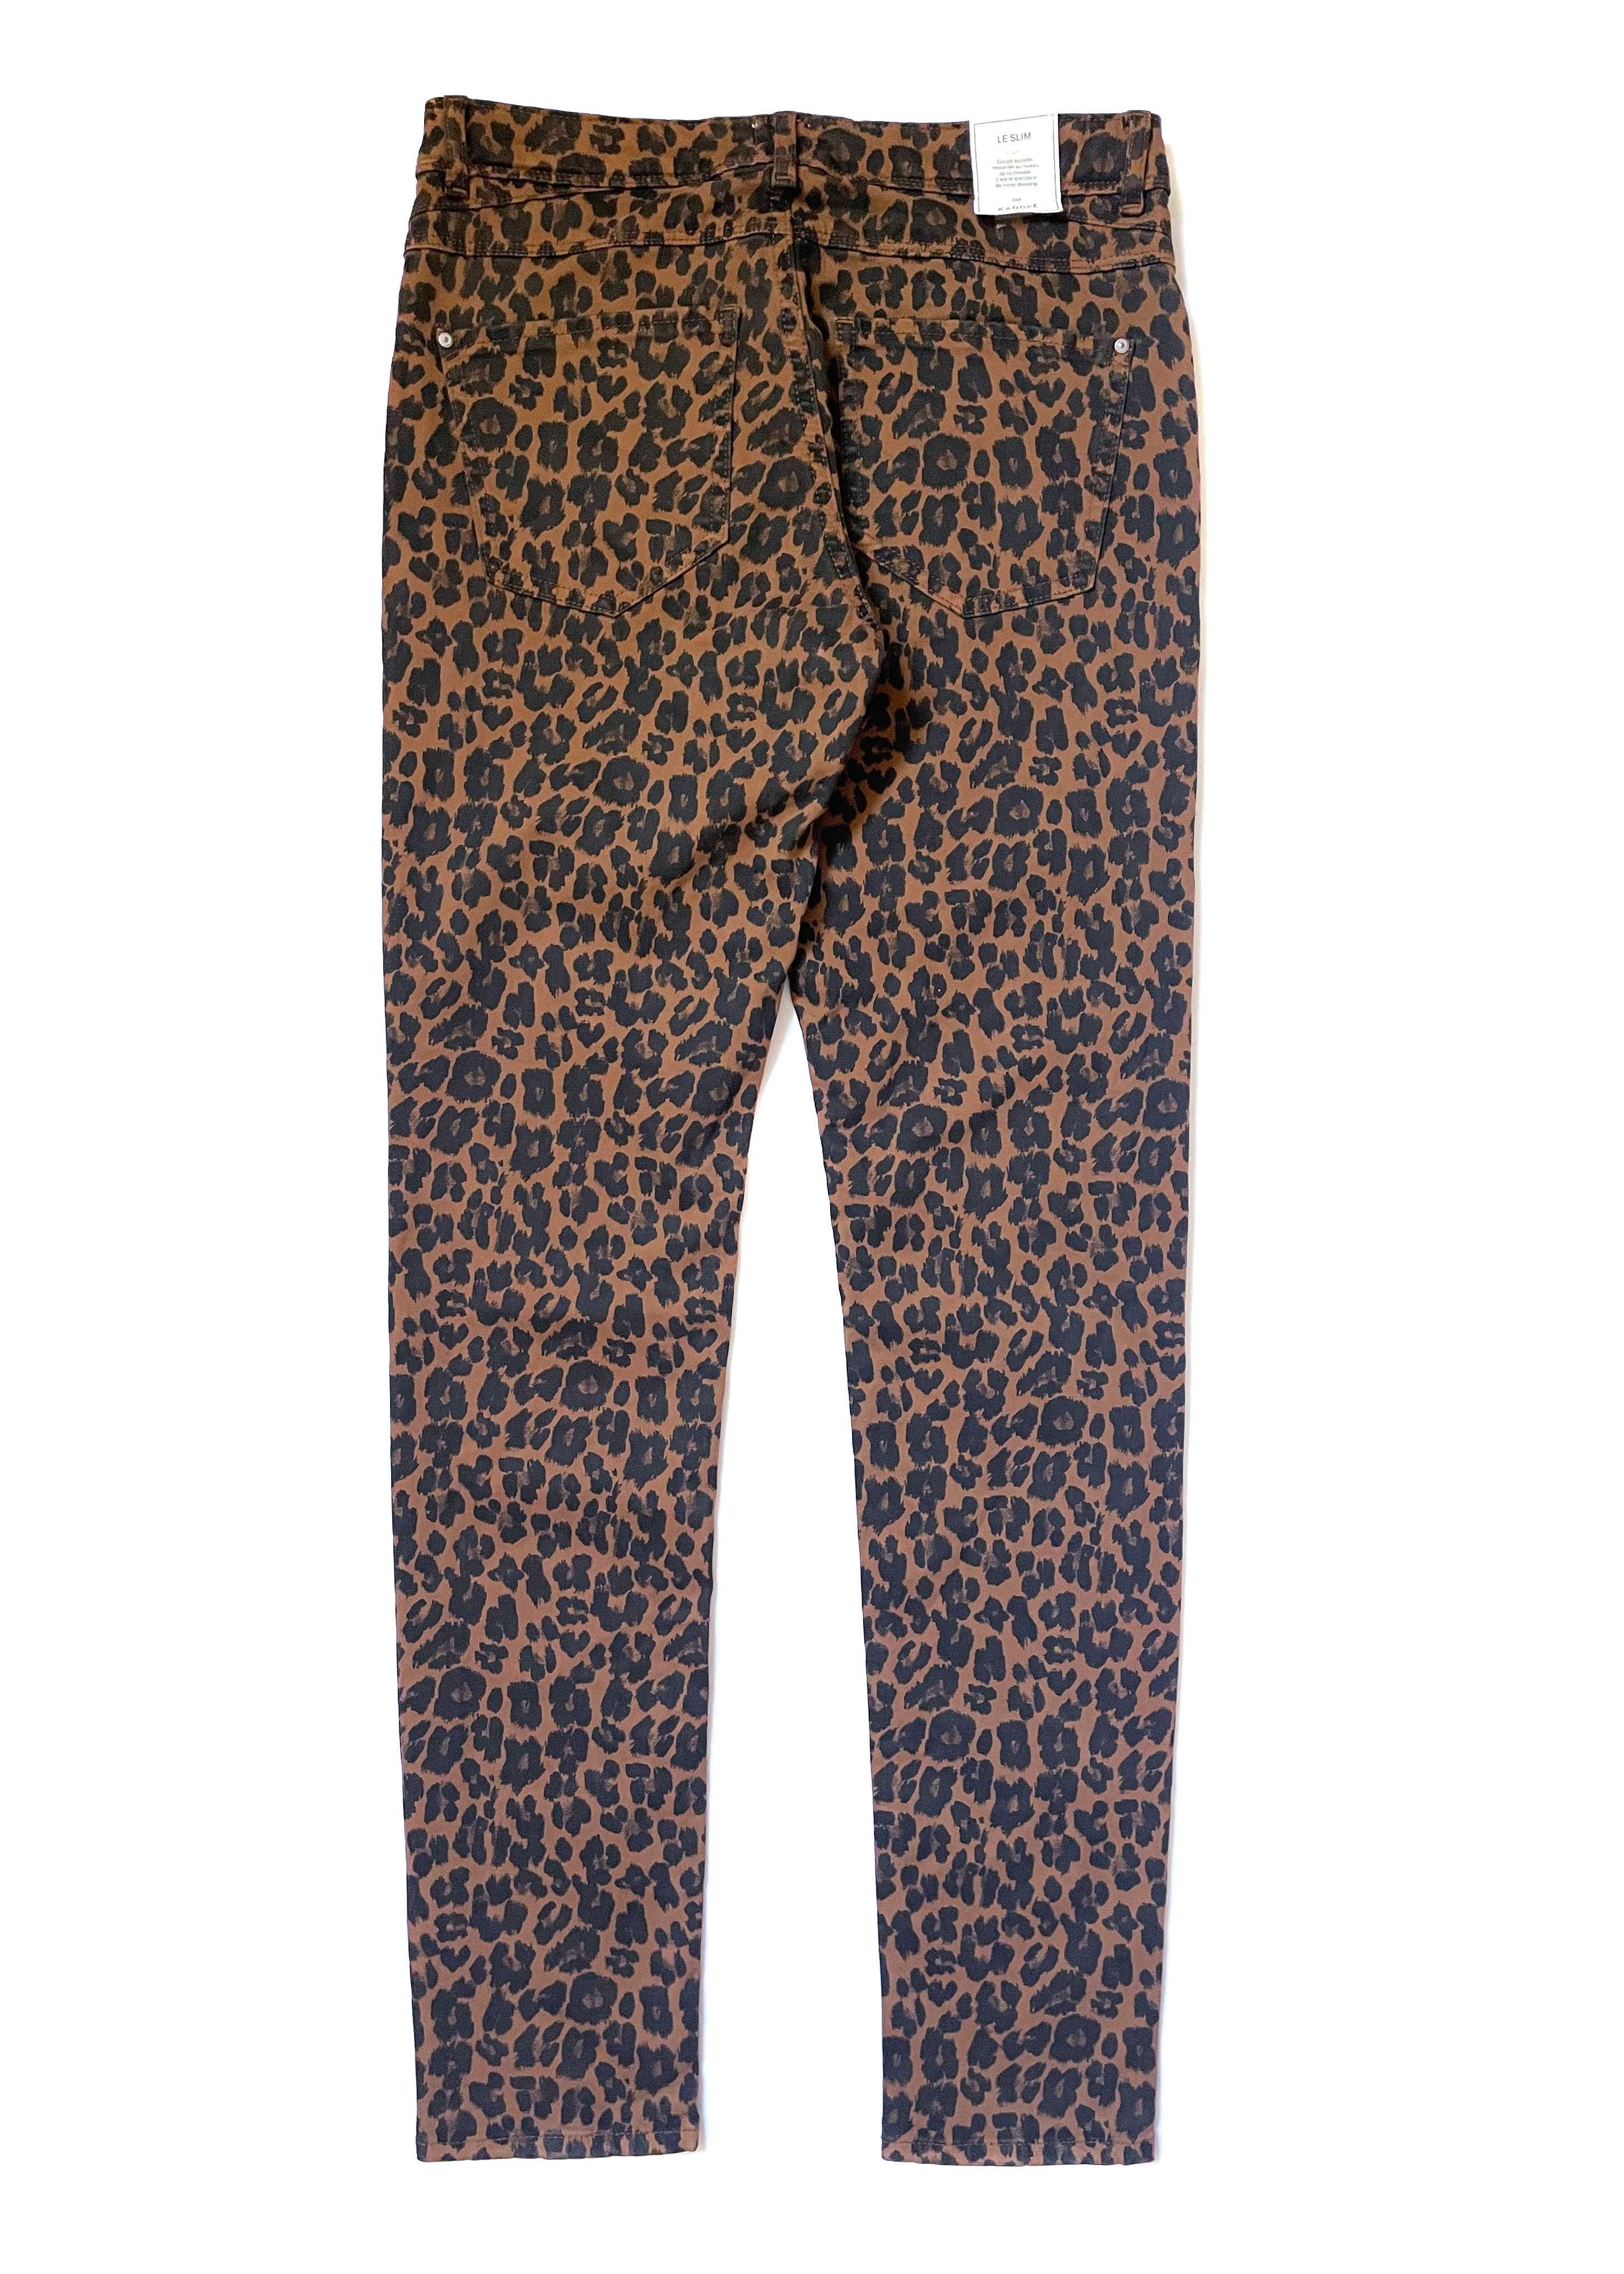 Леопардовые джинсы Kanope slim fit, S/M